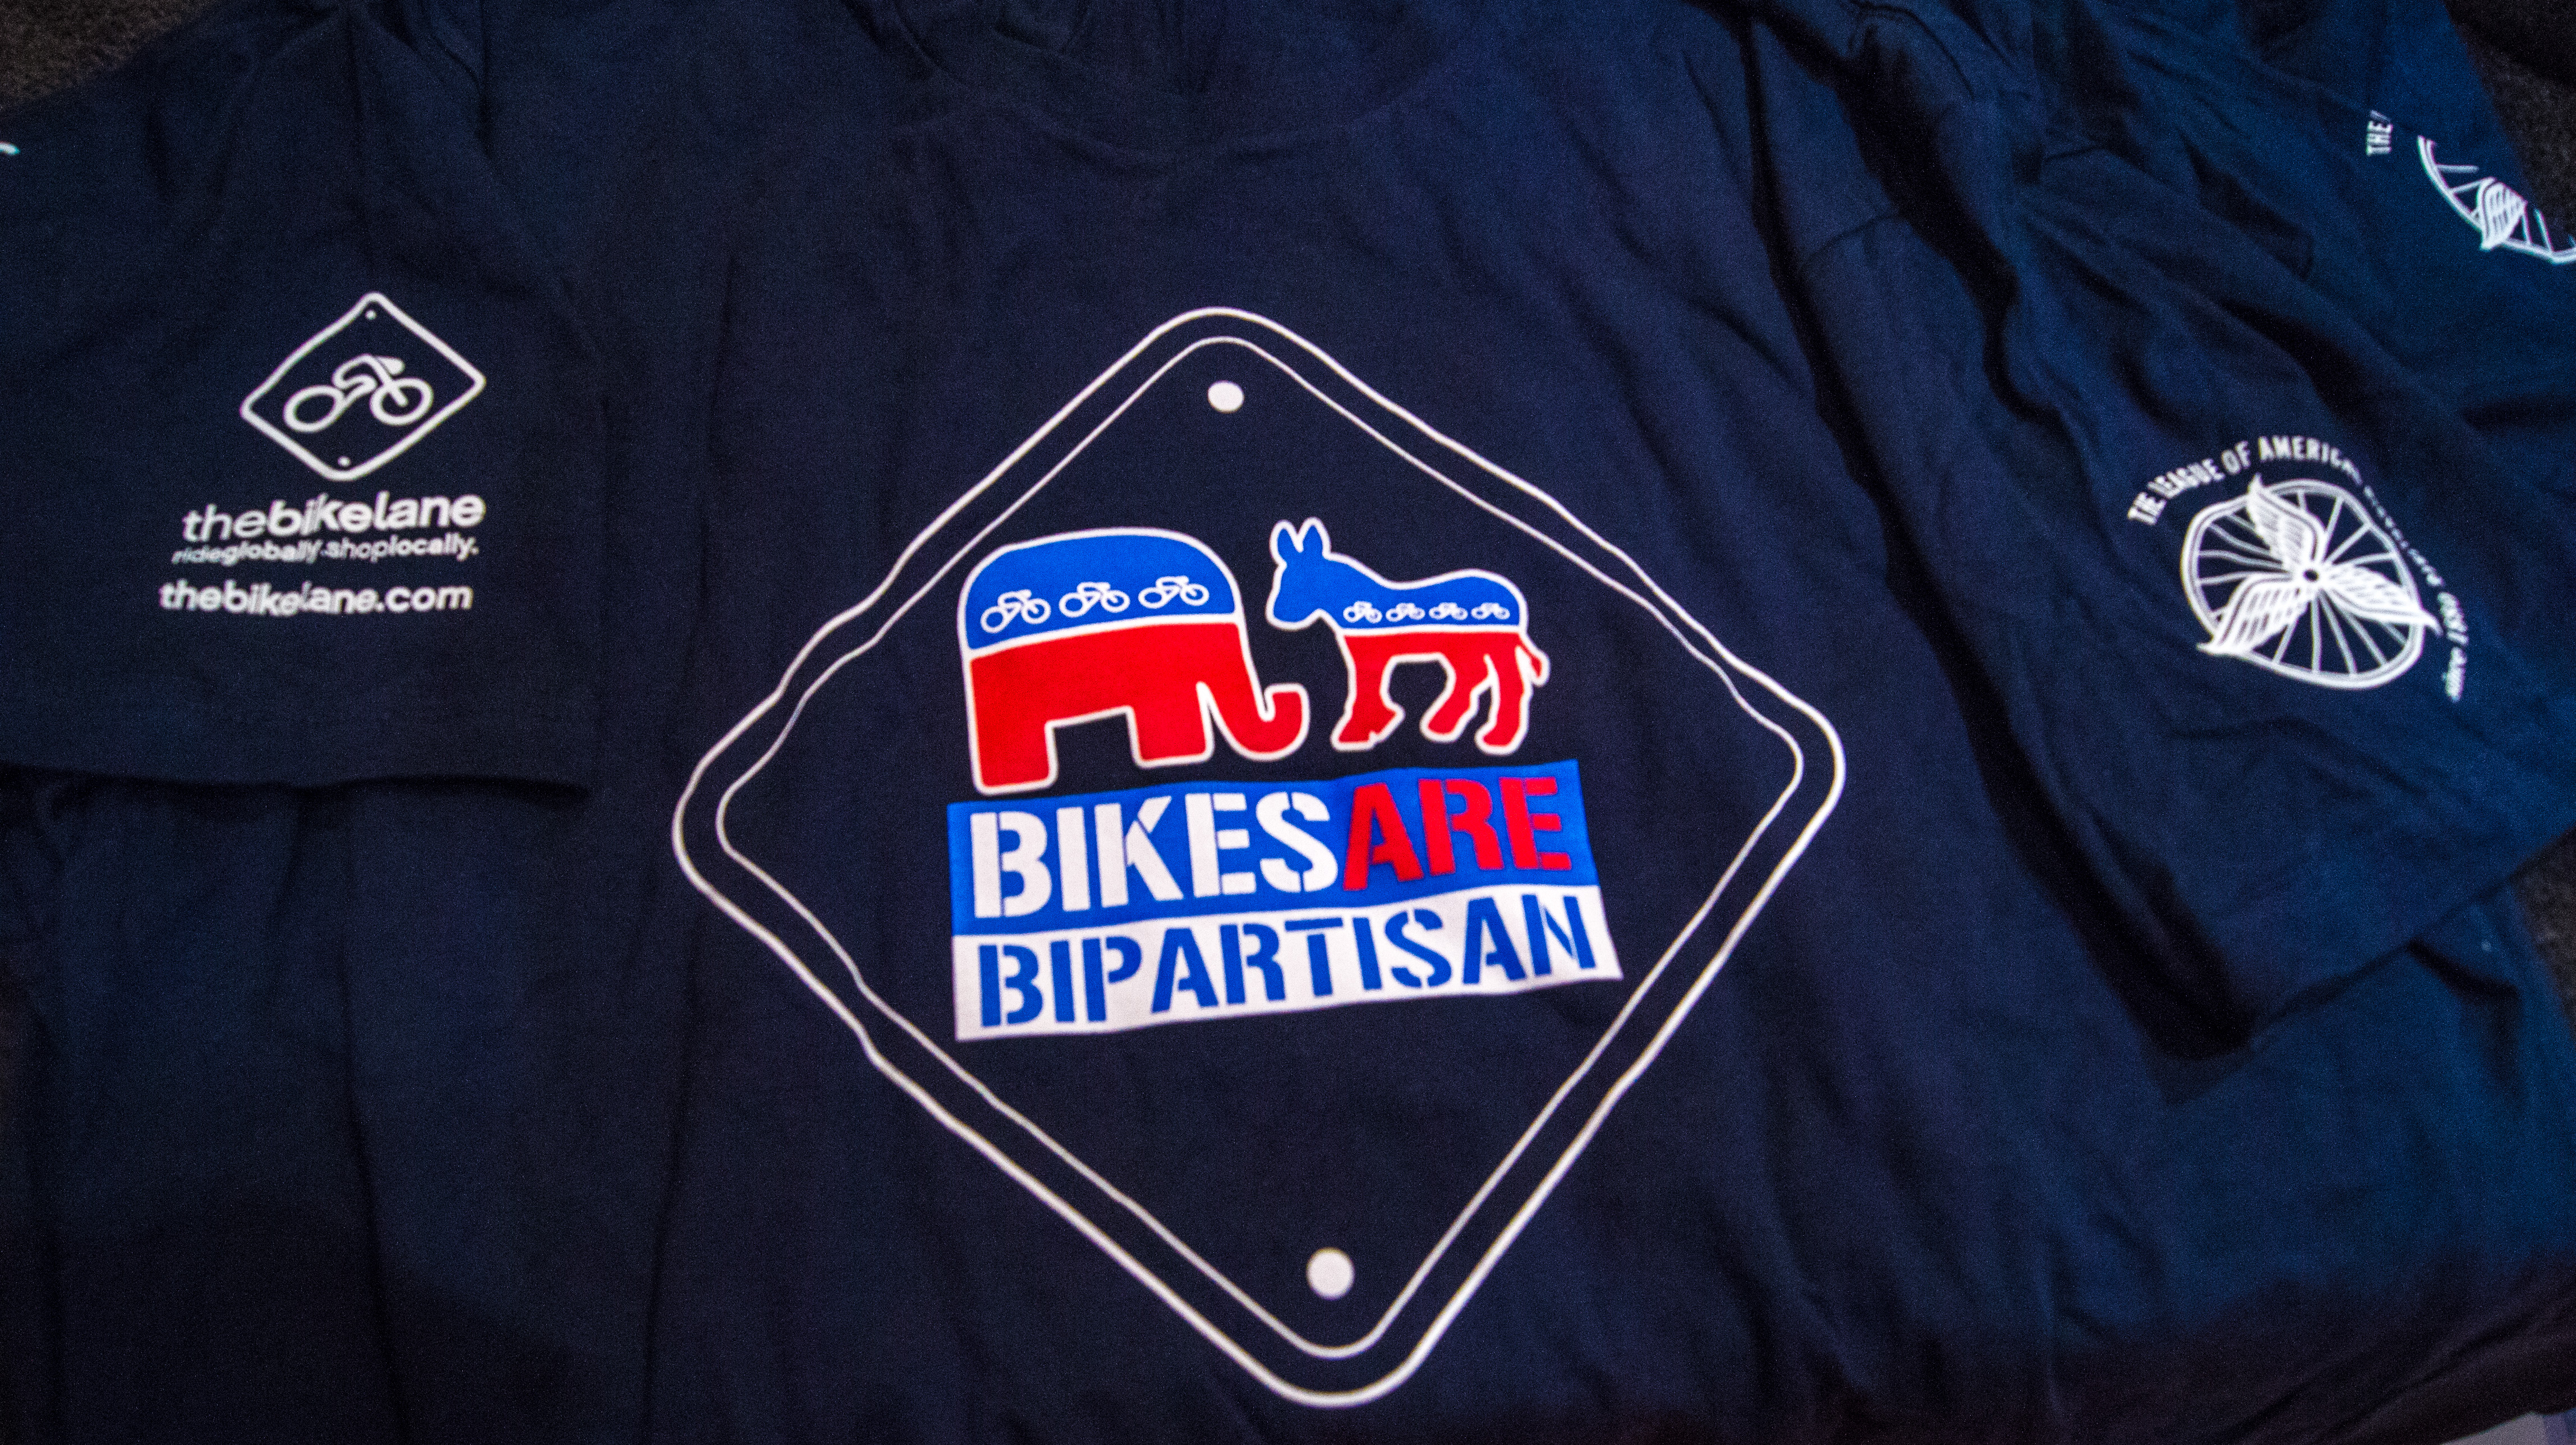 Bipartisan Tshirt